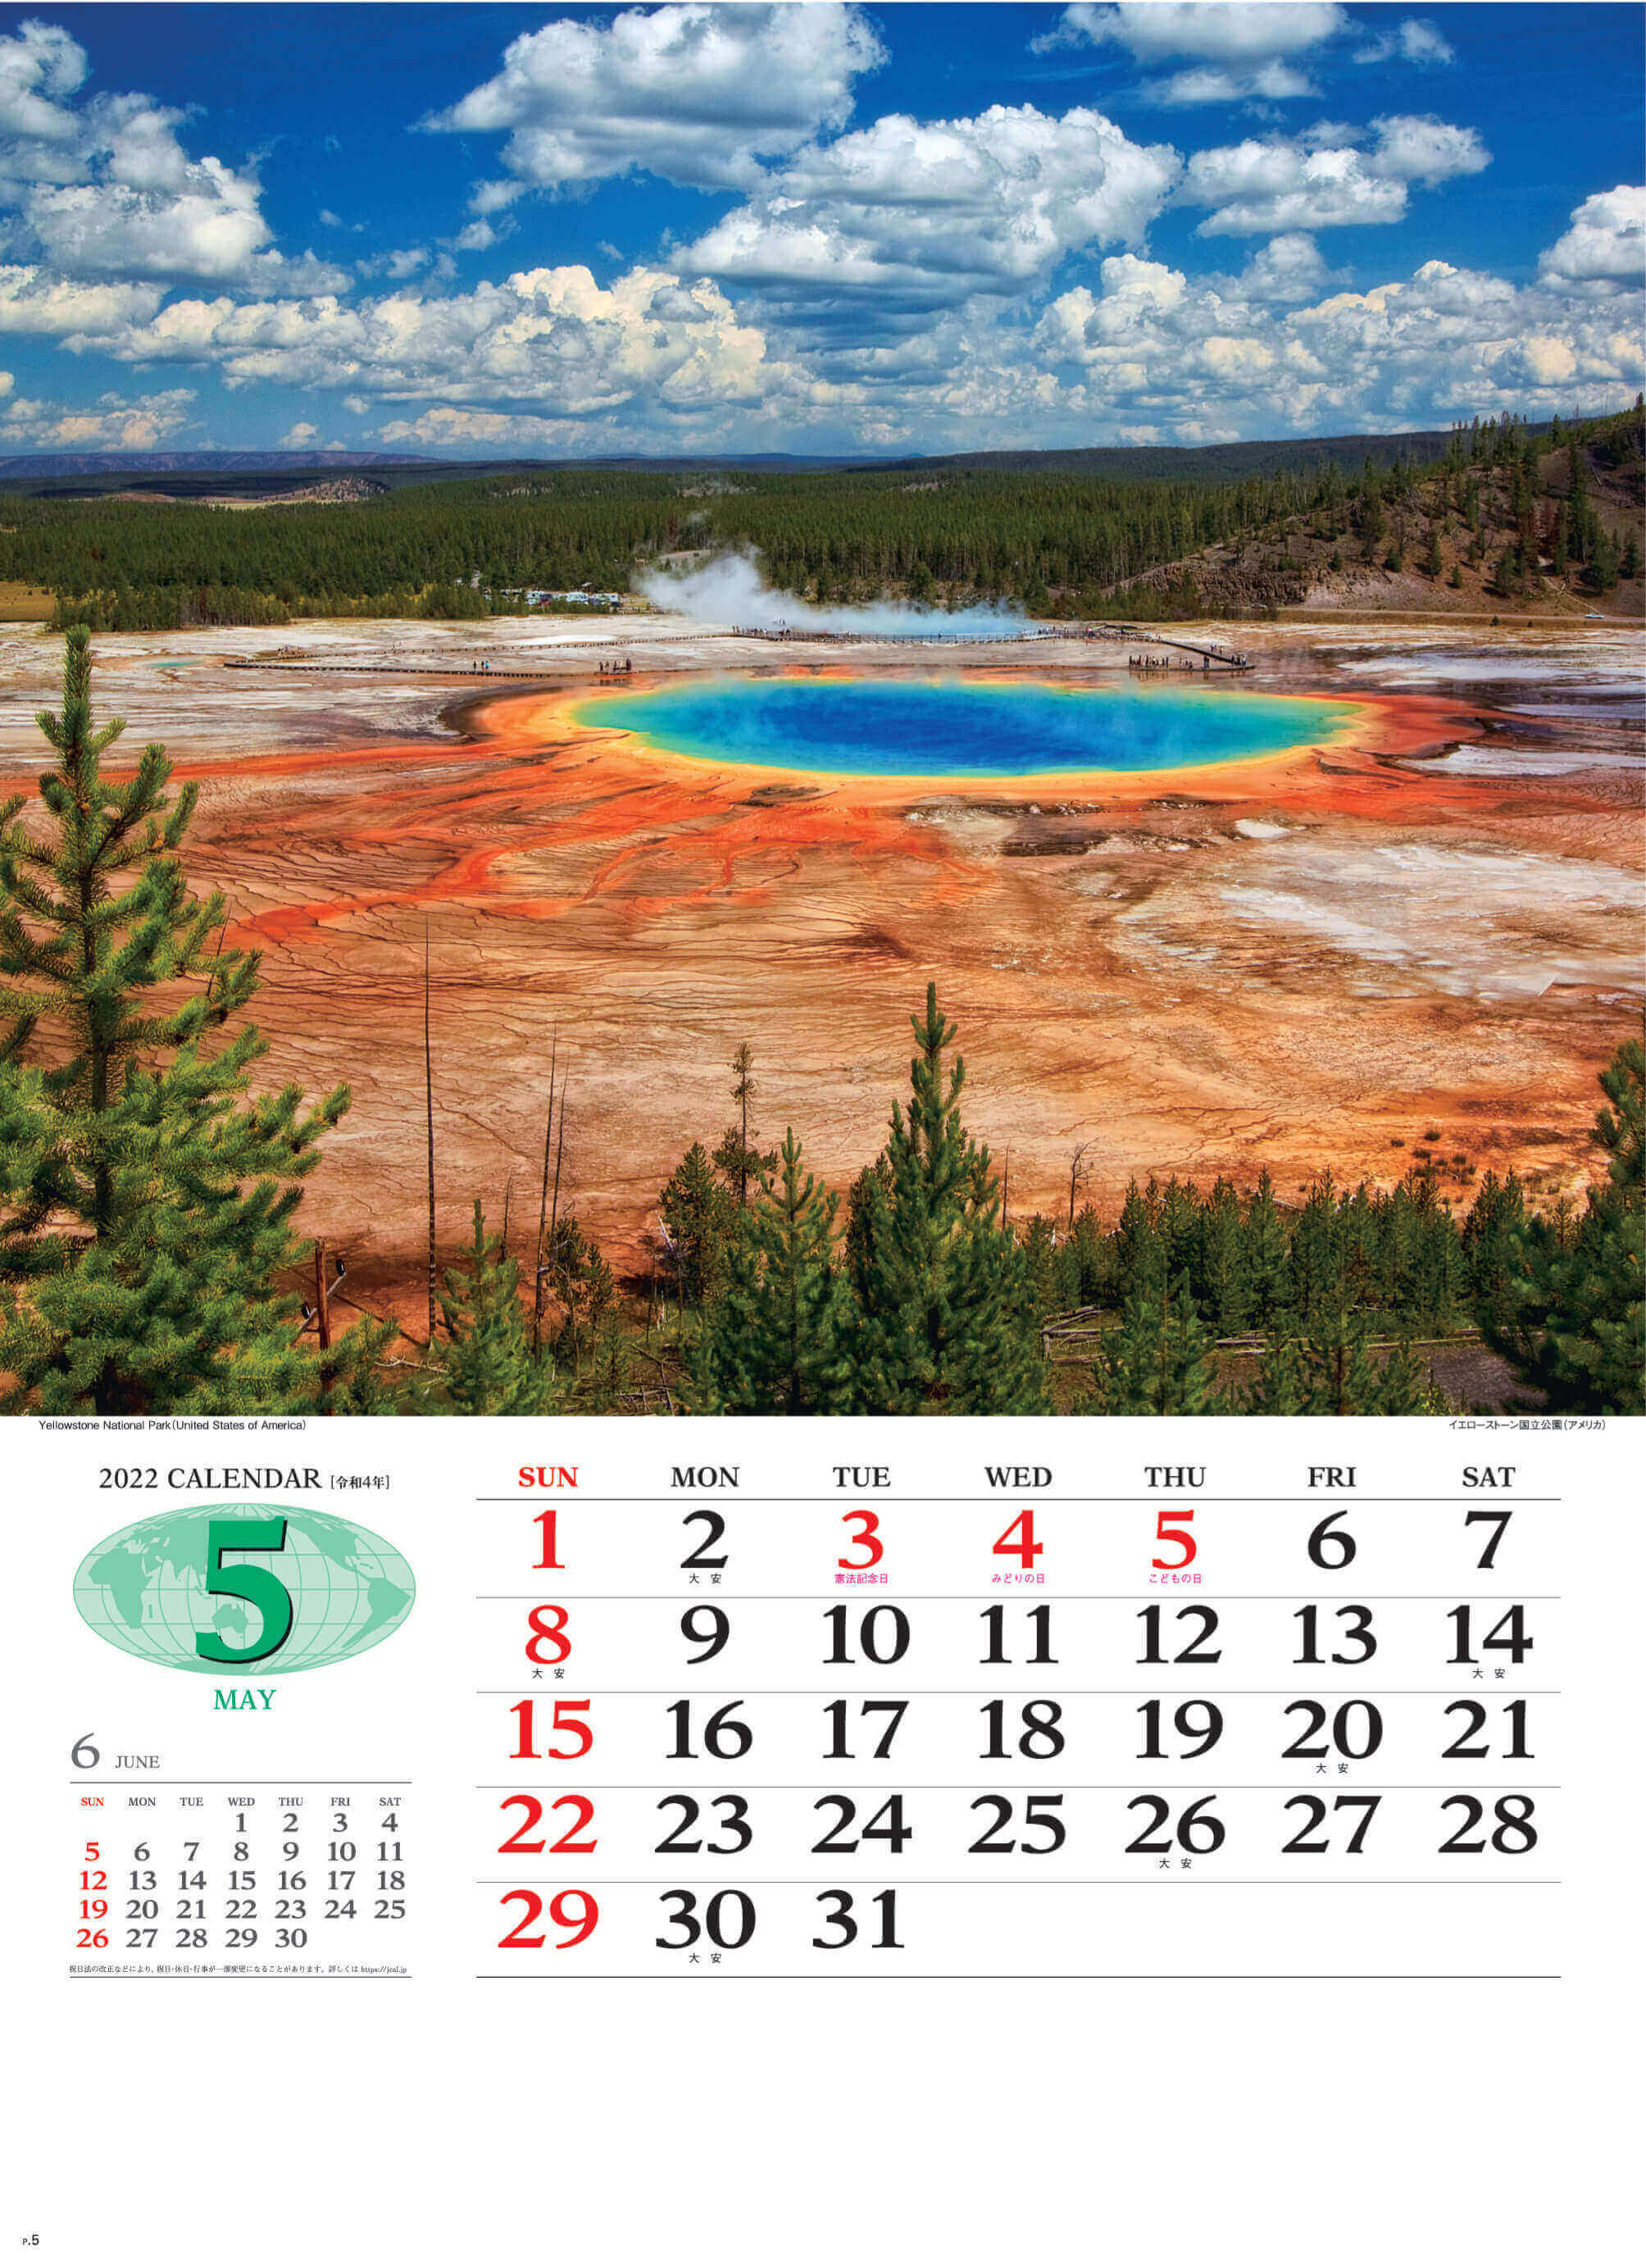 5月 イエローストーン国立公園 アメリカ 世界の景観 2022年カレンダーの画像